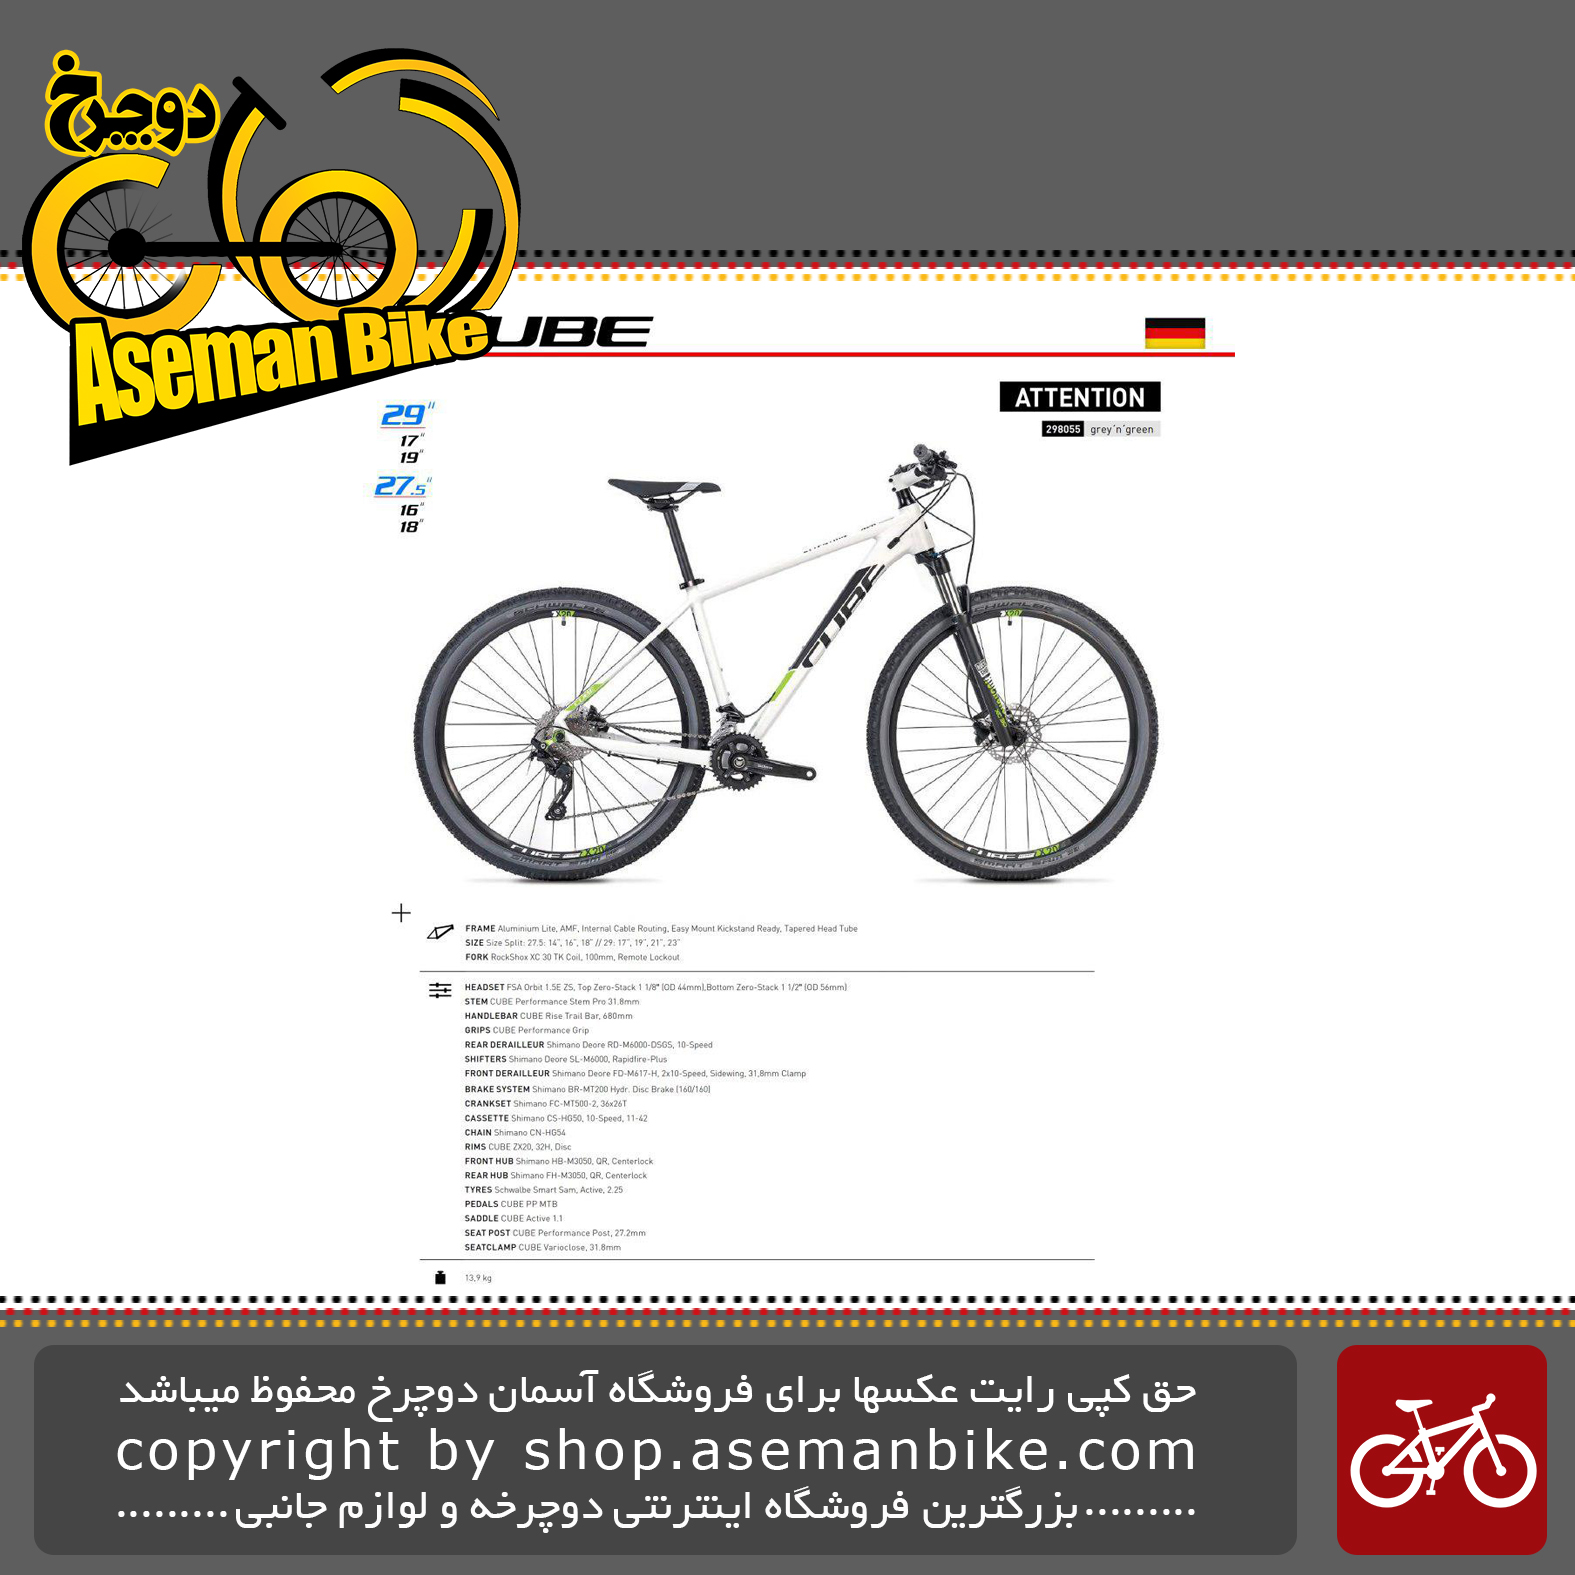 دوچرخه کوهستان کیوب مدل اتنشن سبز و خاکستری سایز 29 2019 CUBE Mountain Bicycle Attention 29 2019